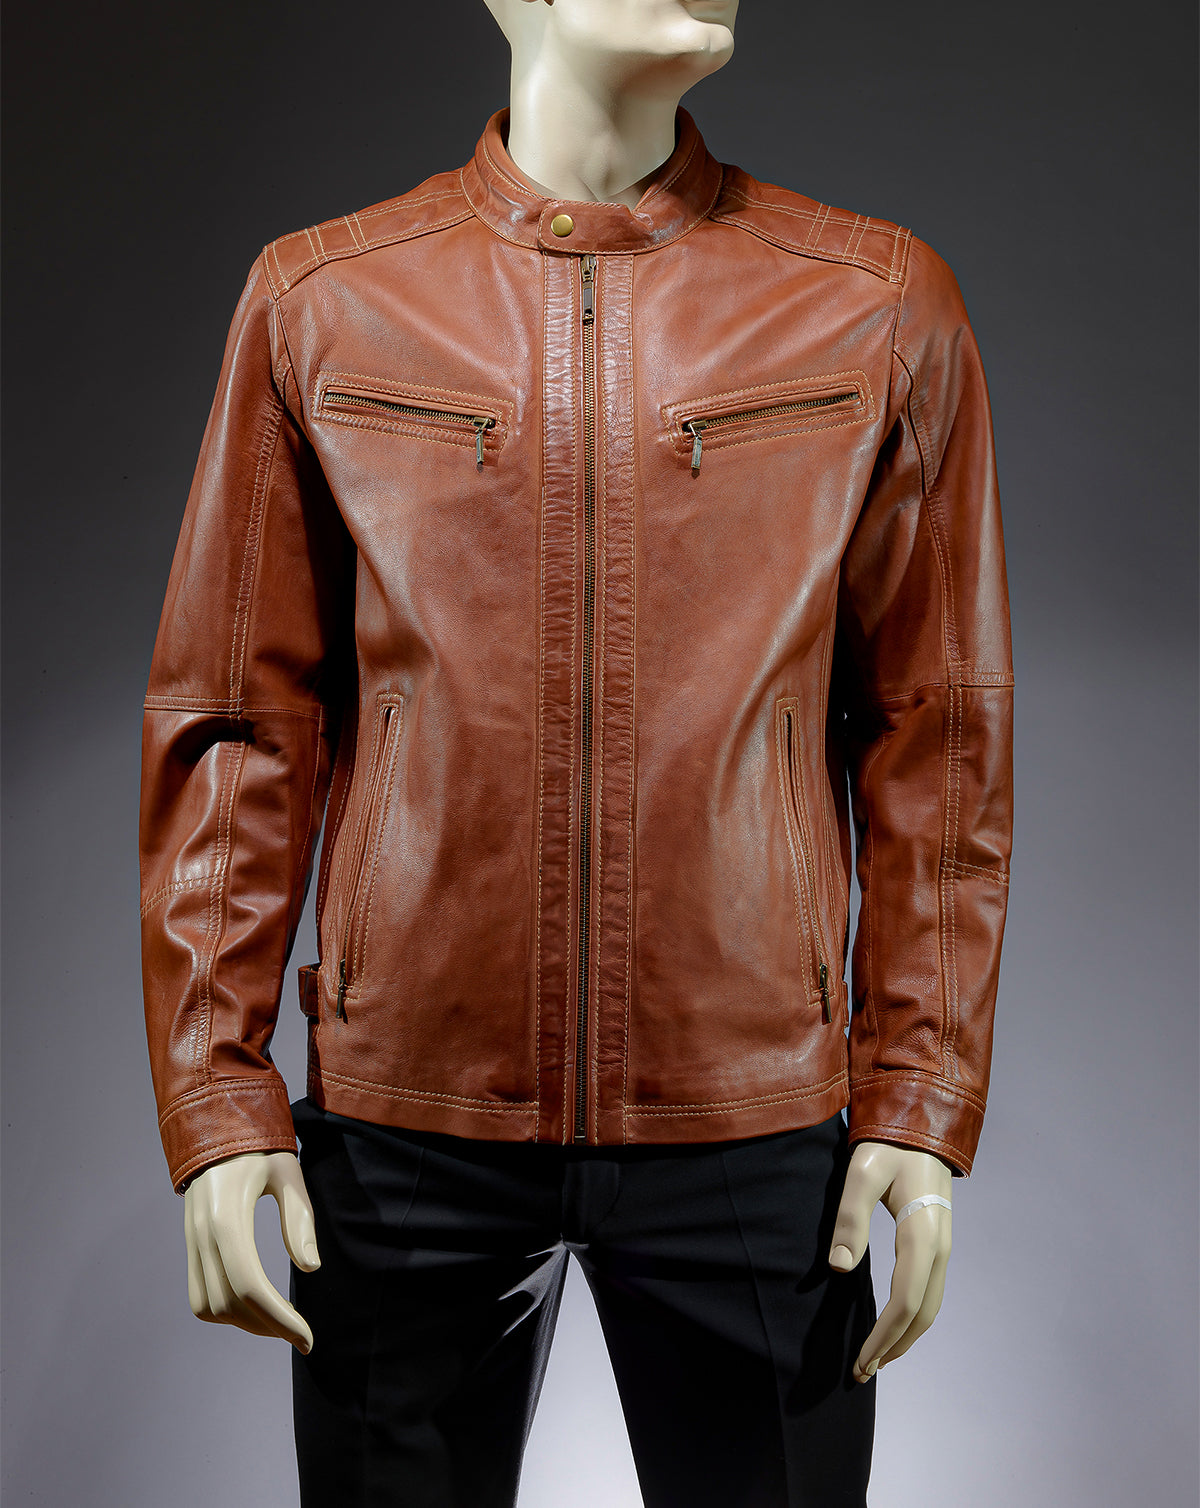 Leather Biker Jacket Whisky color.